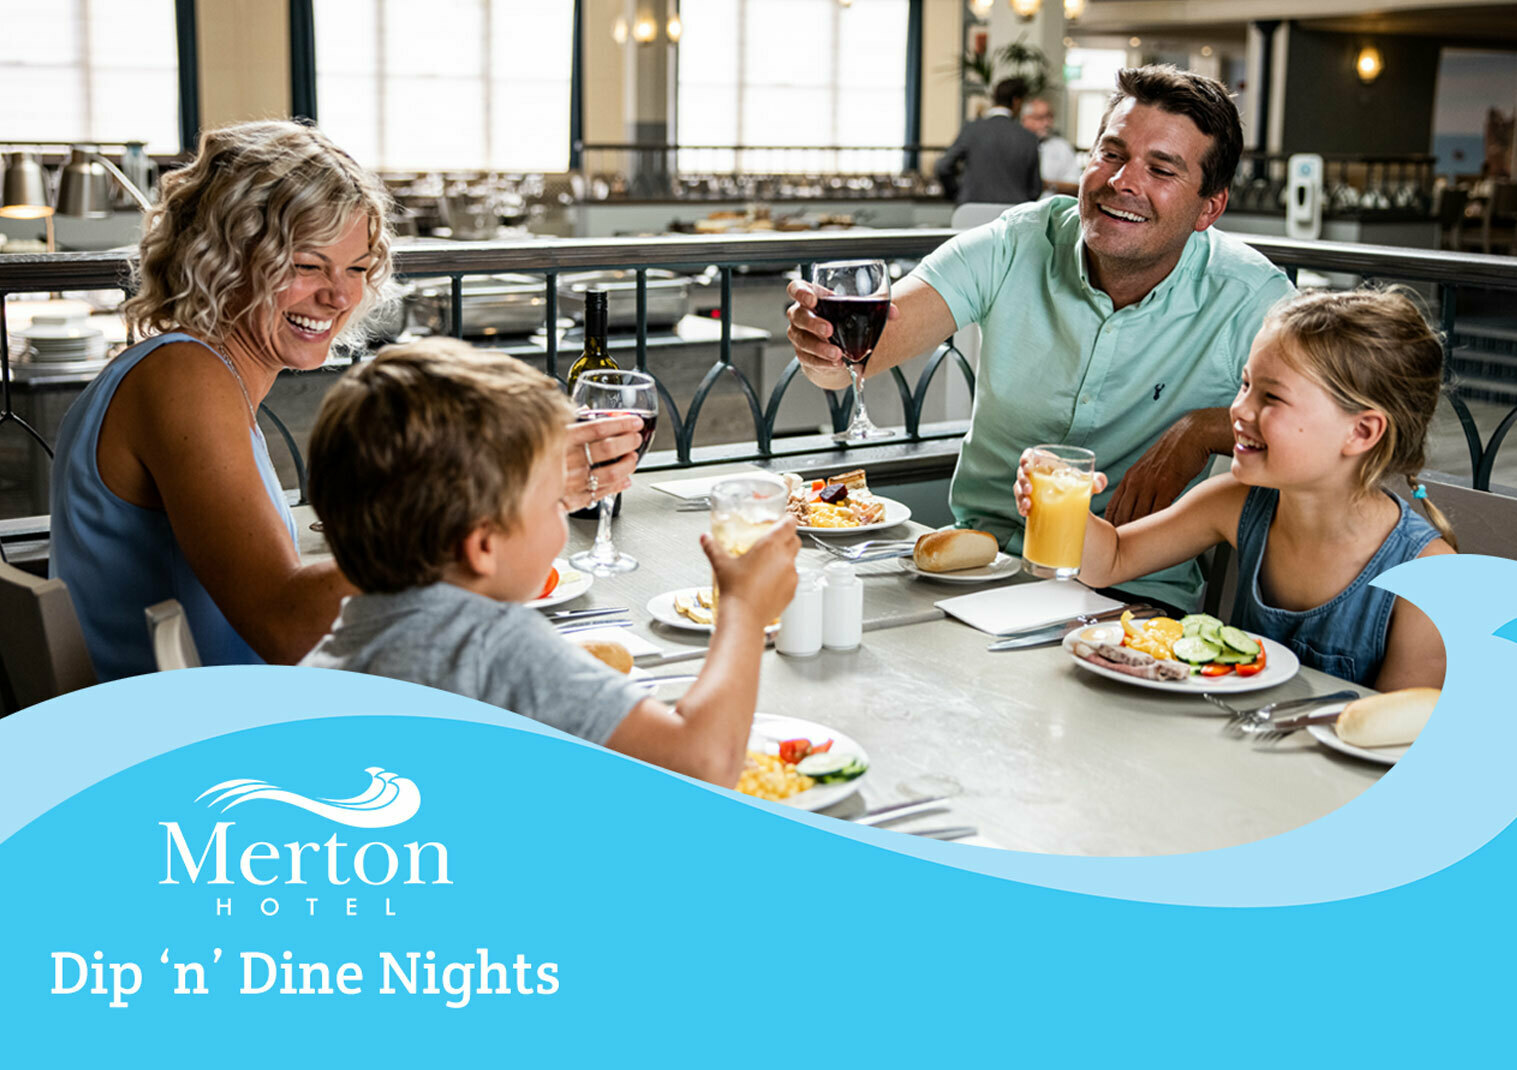 The Merton Hotel 45% off Dip ‘n’ Dine Nights